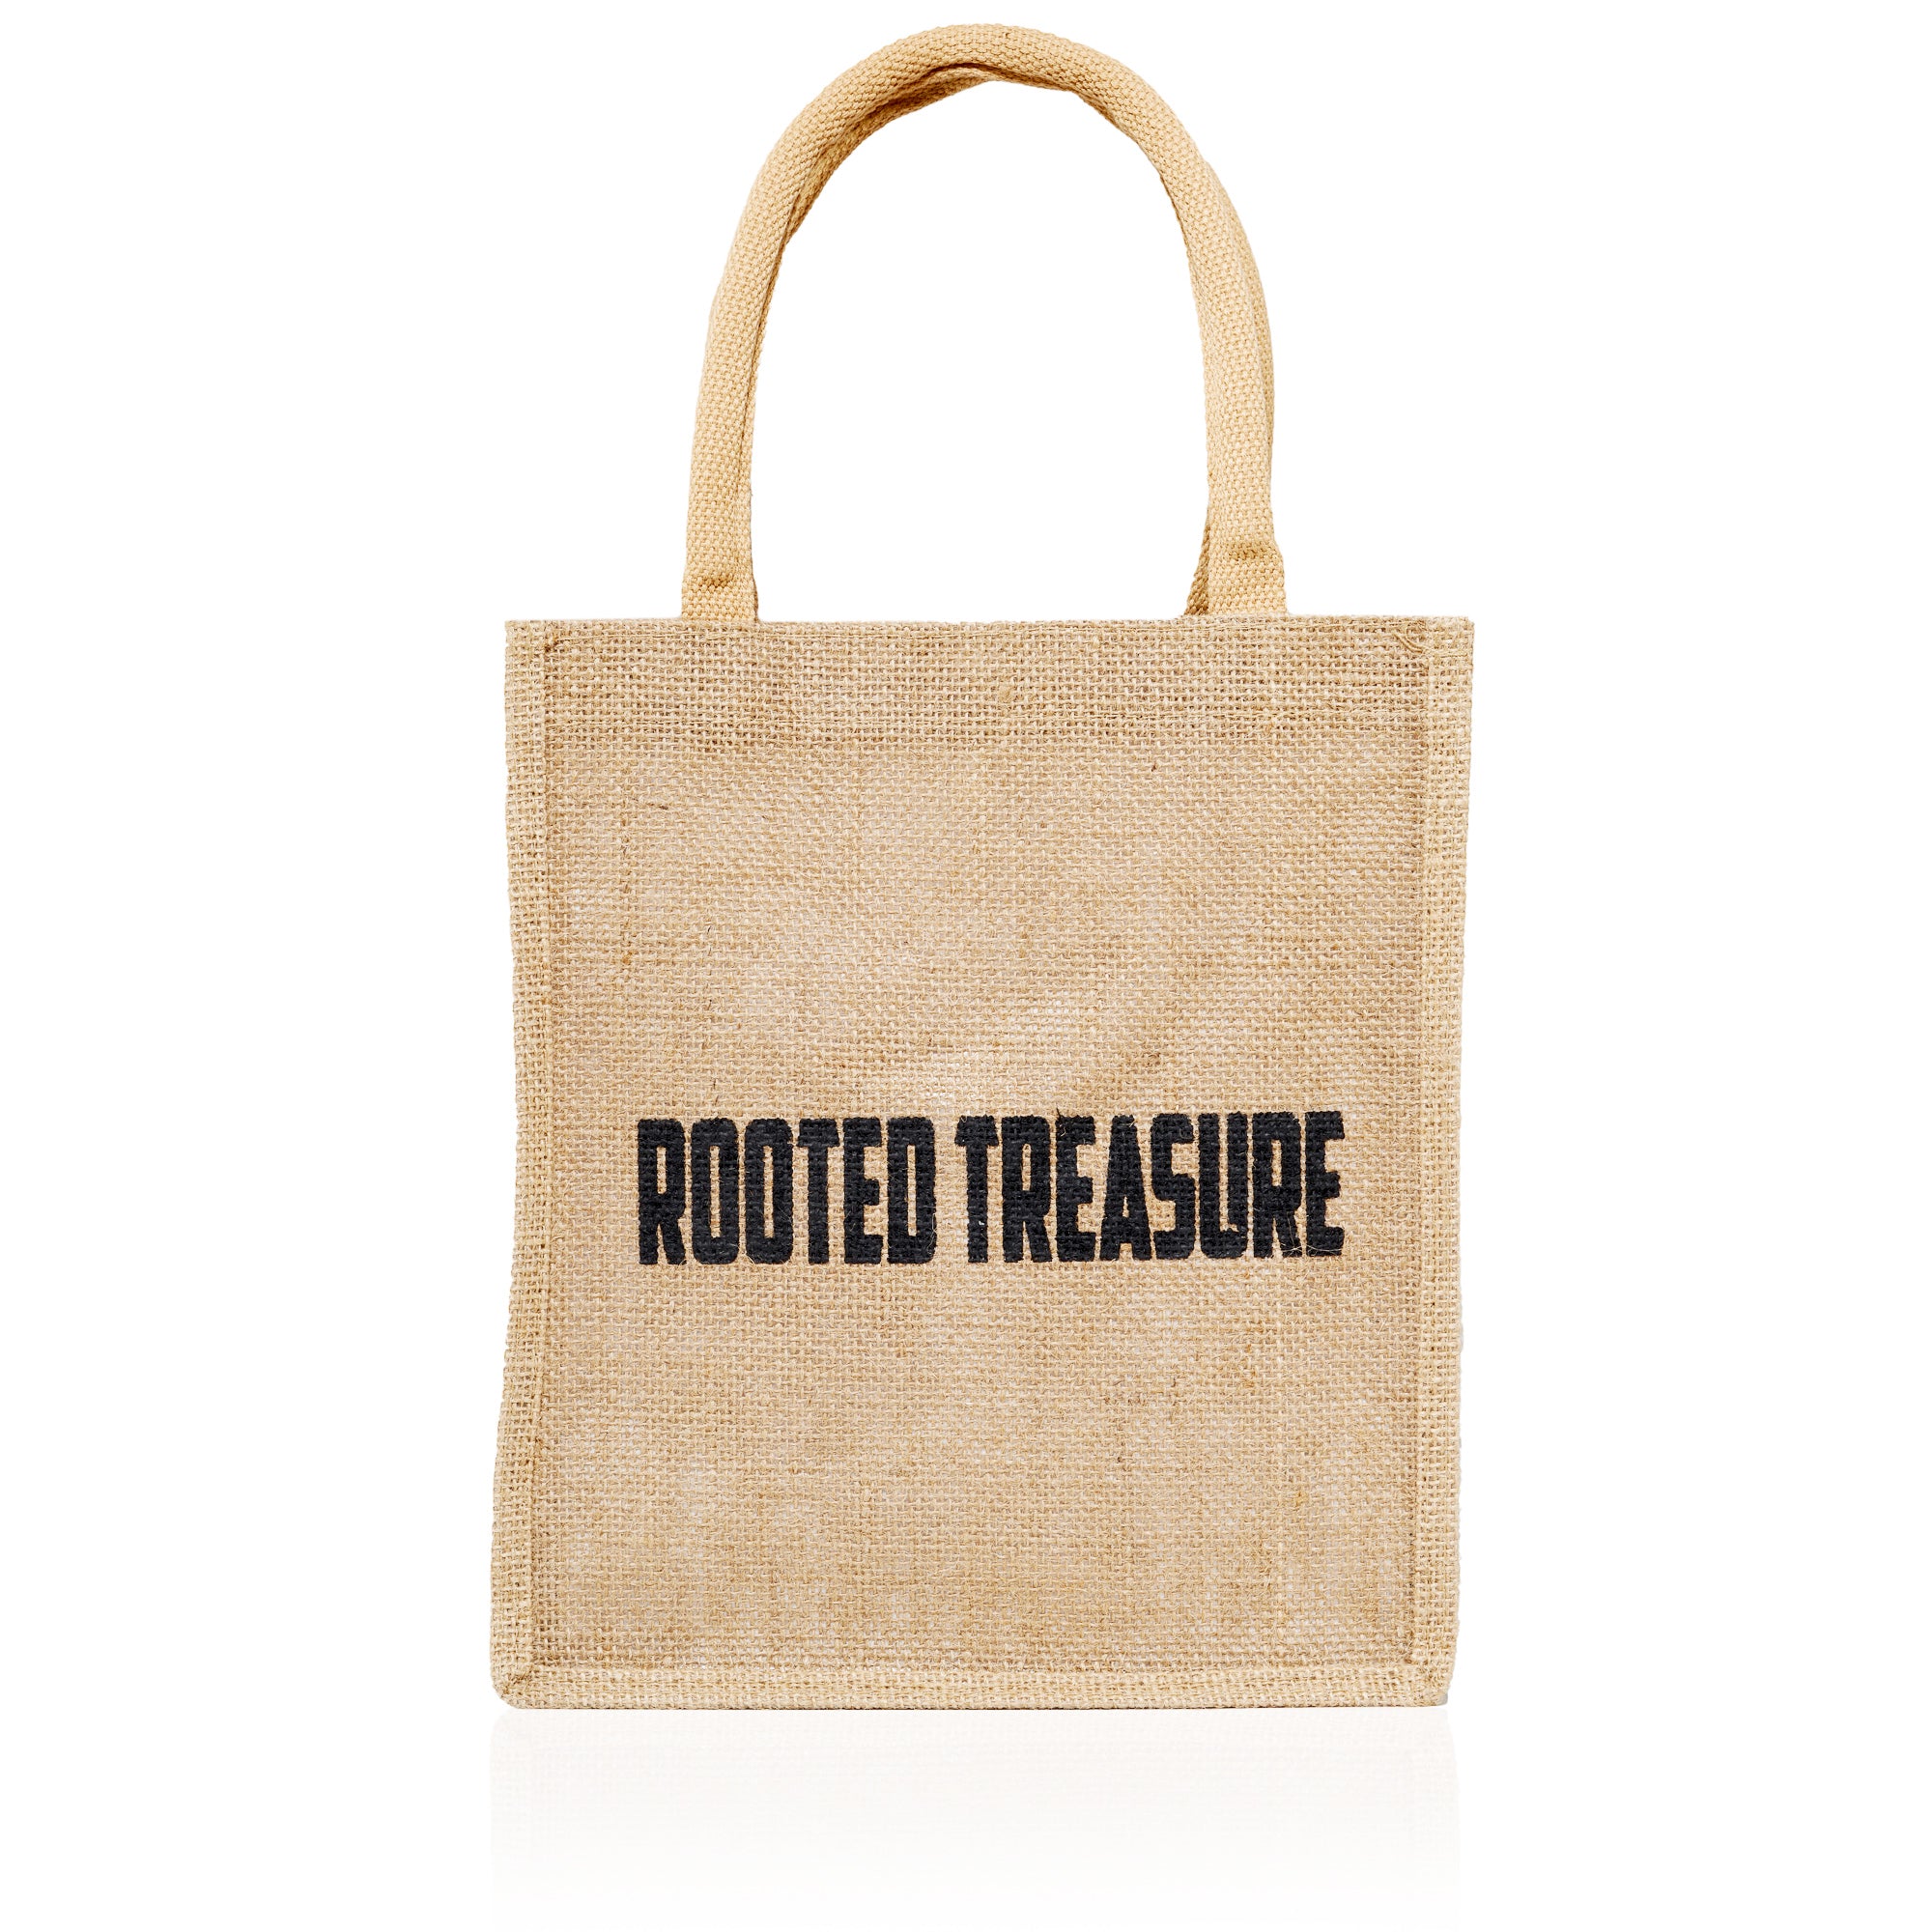 Rooted Treasure Medium Natural Jute Tote bag